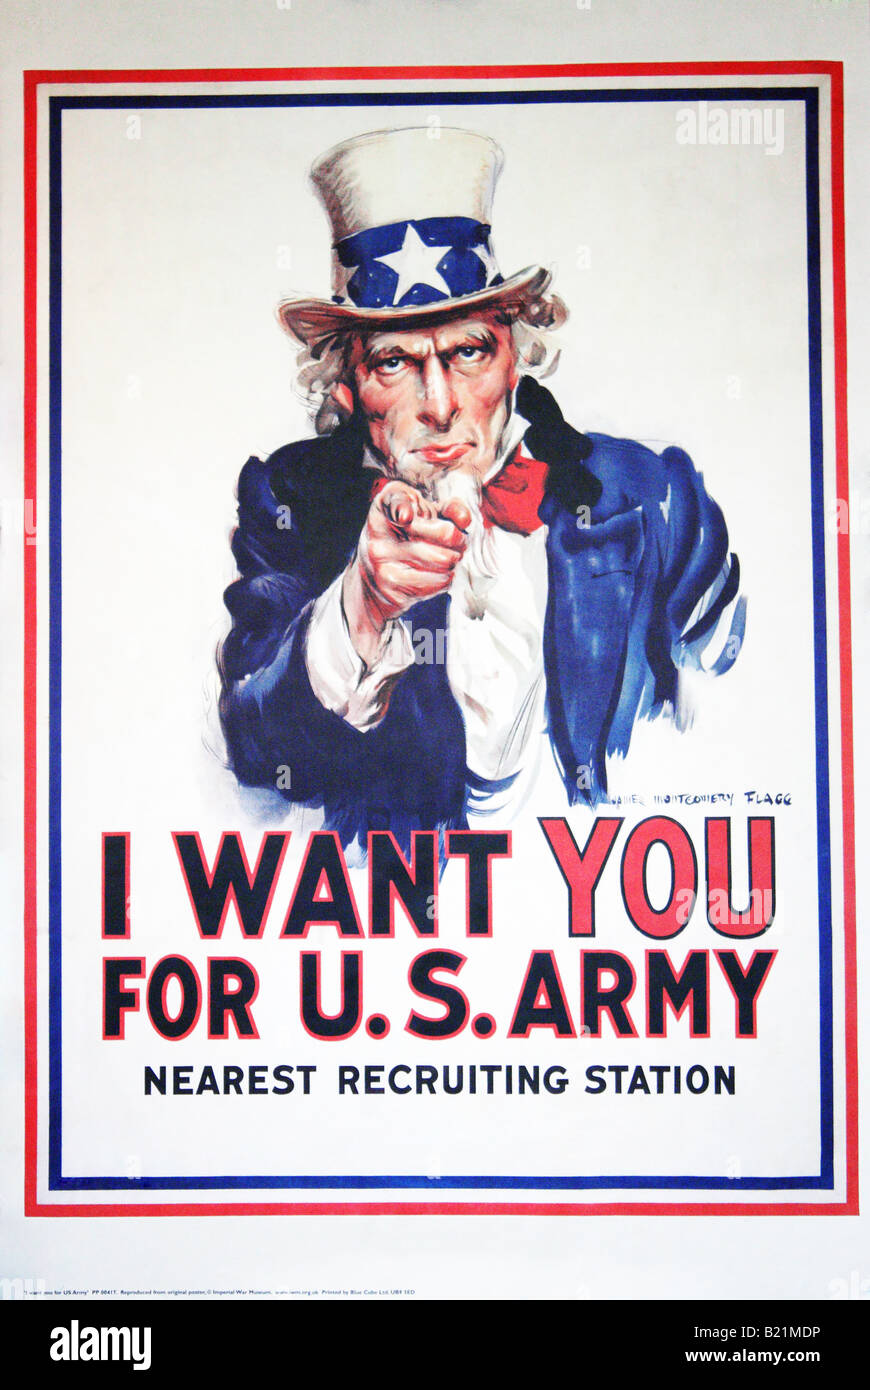 Una fotografía de la famosa 'Tío Sam' poster 'Quiero que para el ejército de los EE.UU" utilizado para la contratación. Foto de stock